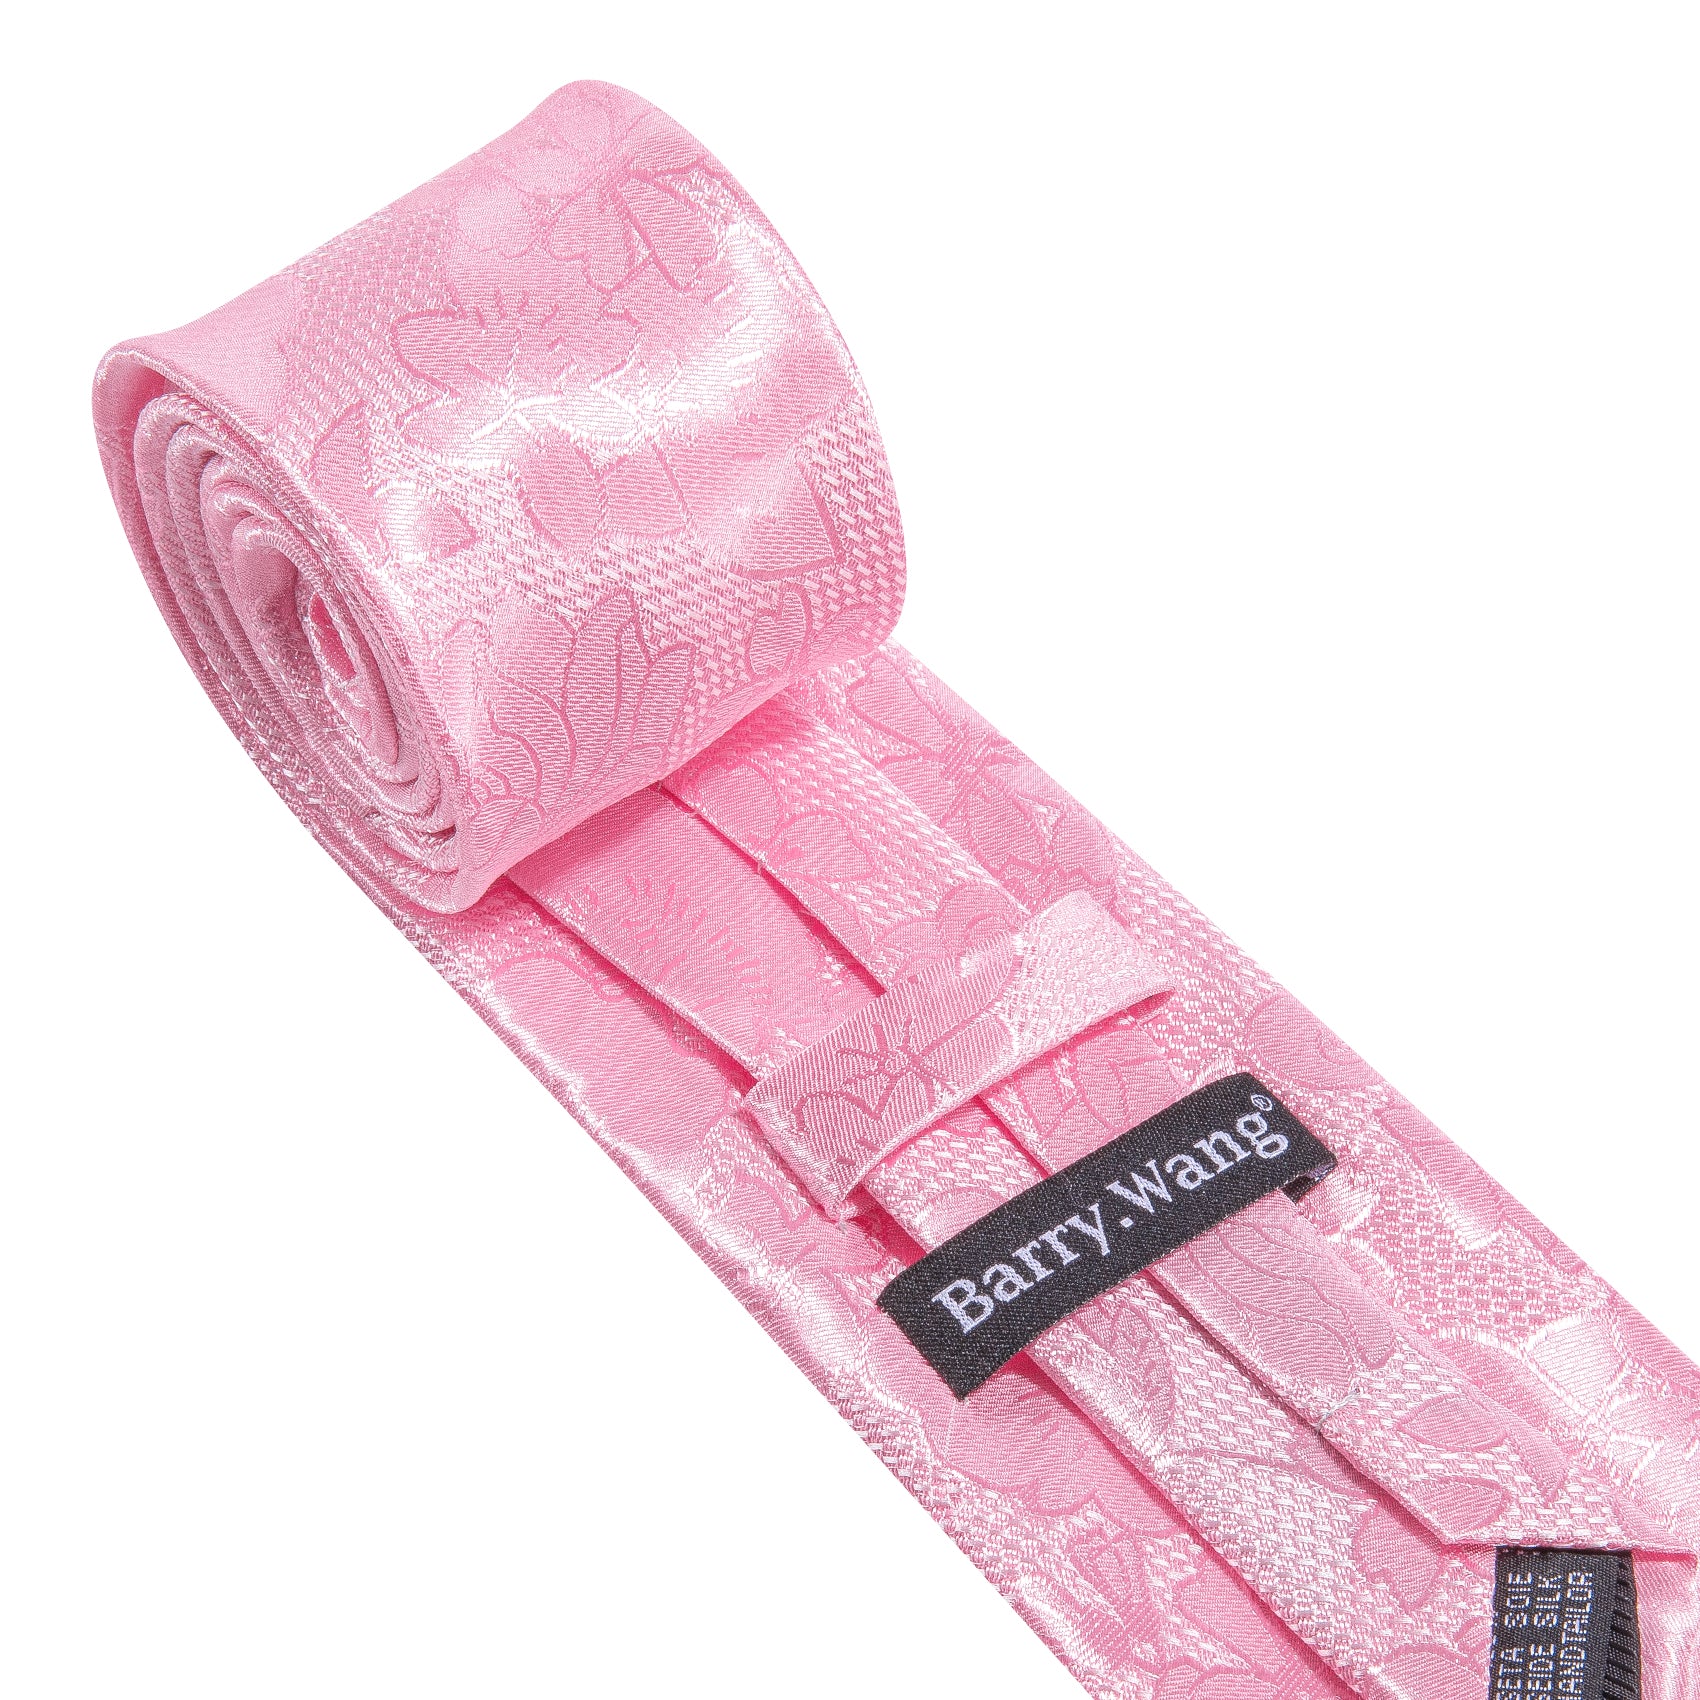 Bright Pink Flower Silk Tie Handkerchief Cufflinks Set